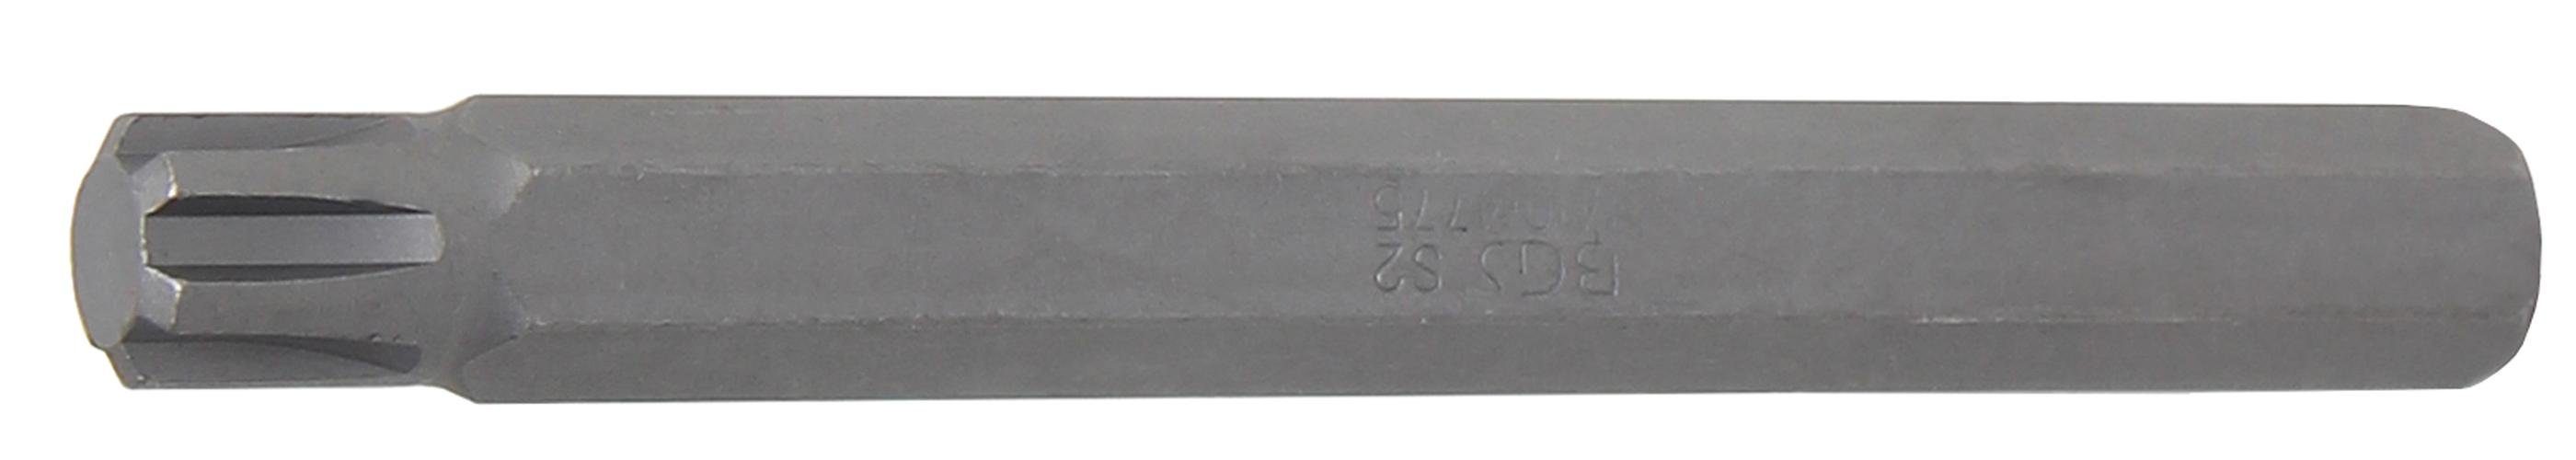 BGS Keil-Profil mm, RIBE) mm 100 Länge Antrieb M10 10 (3/8), Bit, (für Bit-Schraubendreher technic Außensechskant